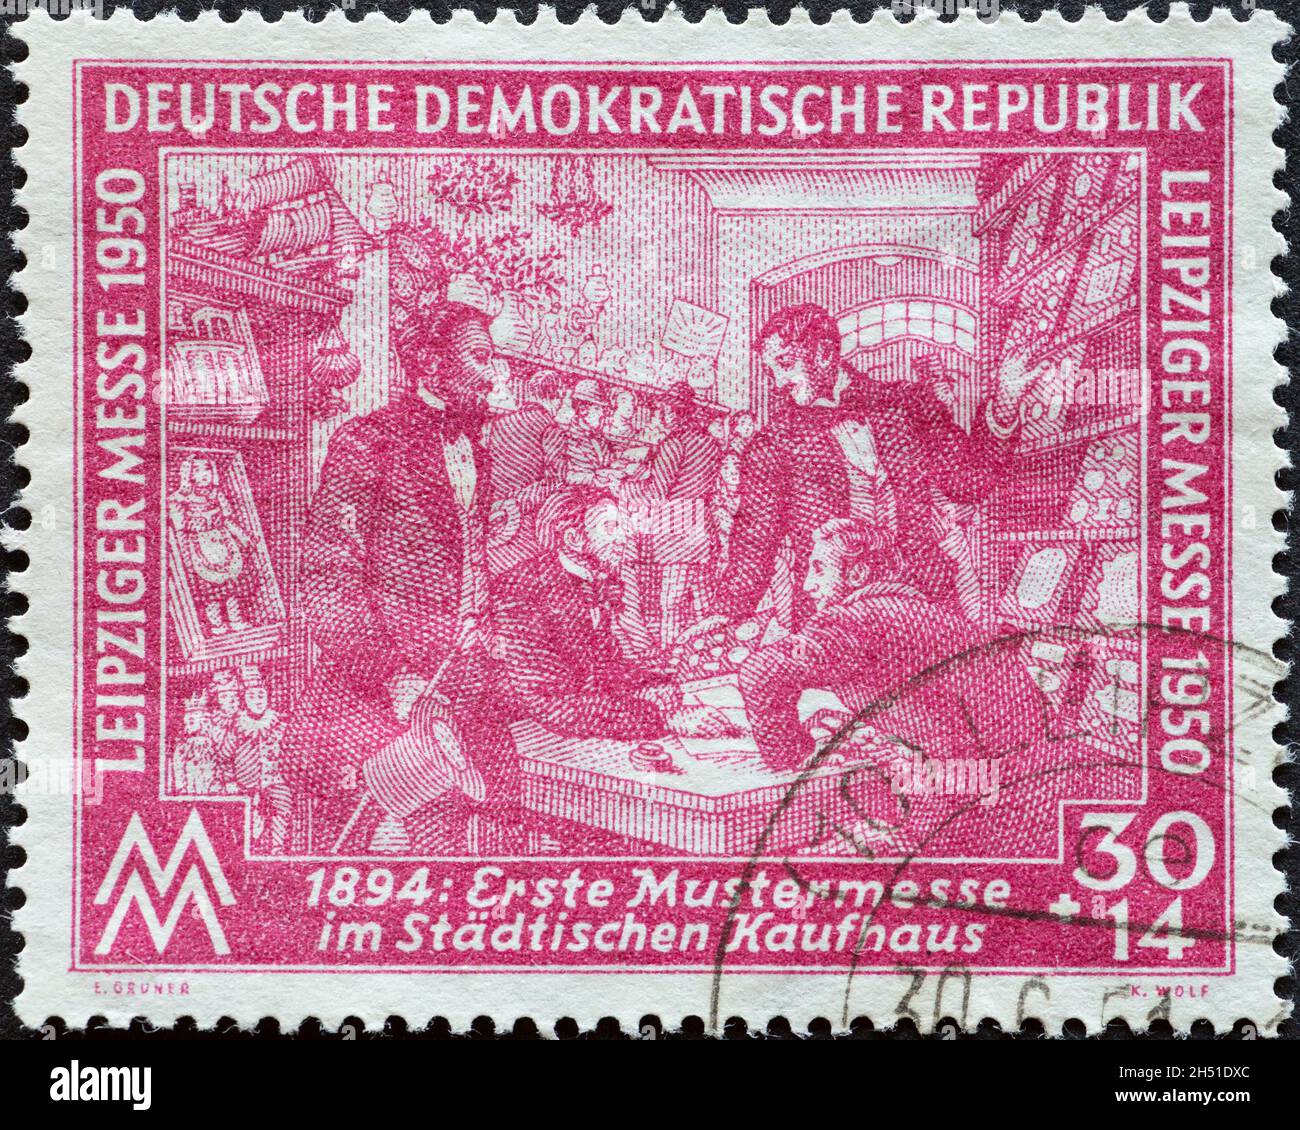 ALLEMAGNE, DDR - VERS 1950: Timbre-poste de l'Allemagne, GDR montrant un stand de vente dans le grand magasin municipal pour le premier salon de l'échantillon en 1894 Banque D'Images